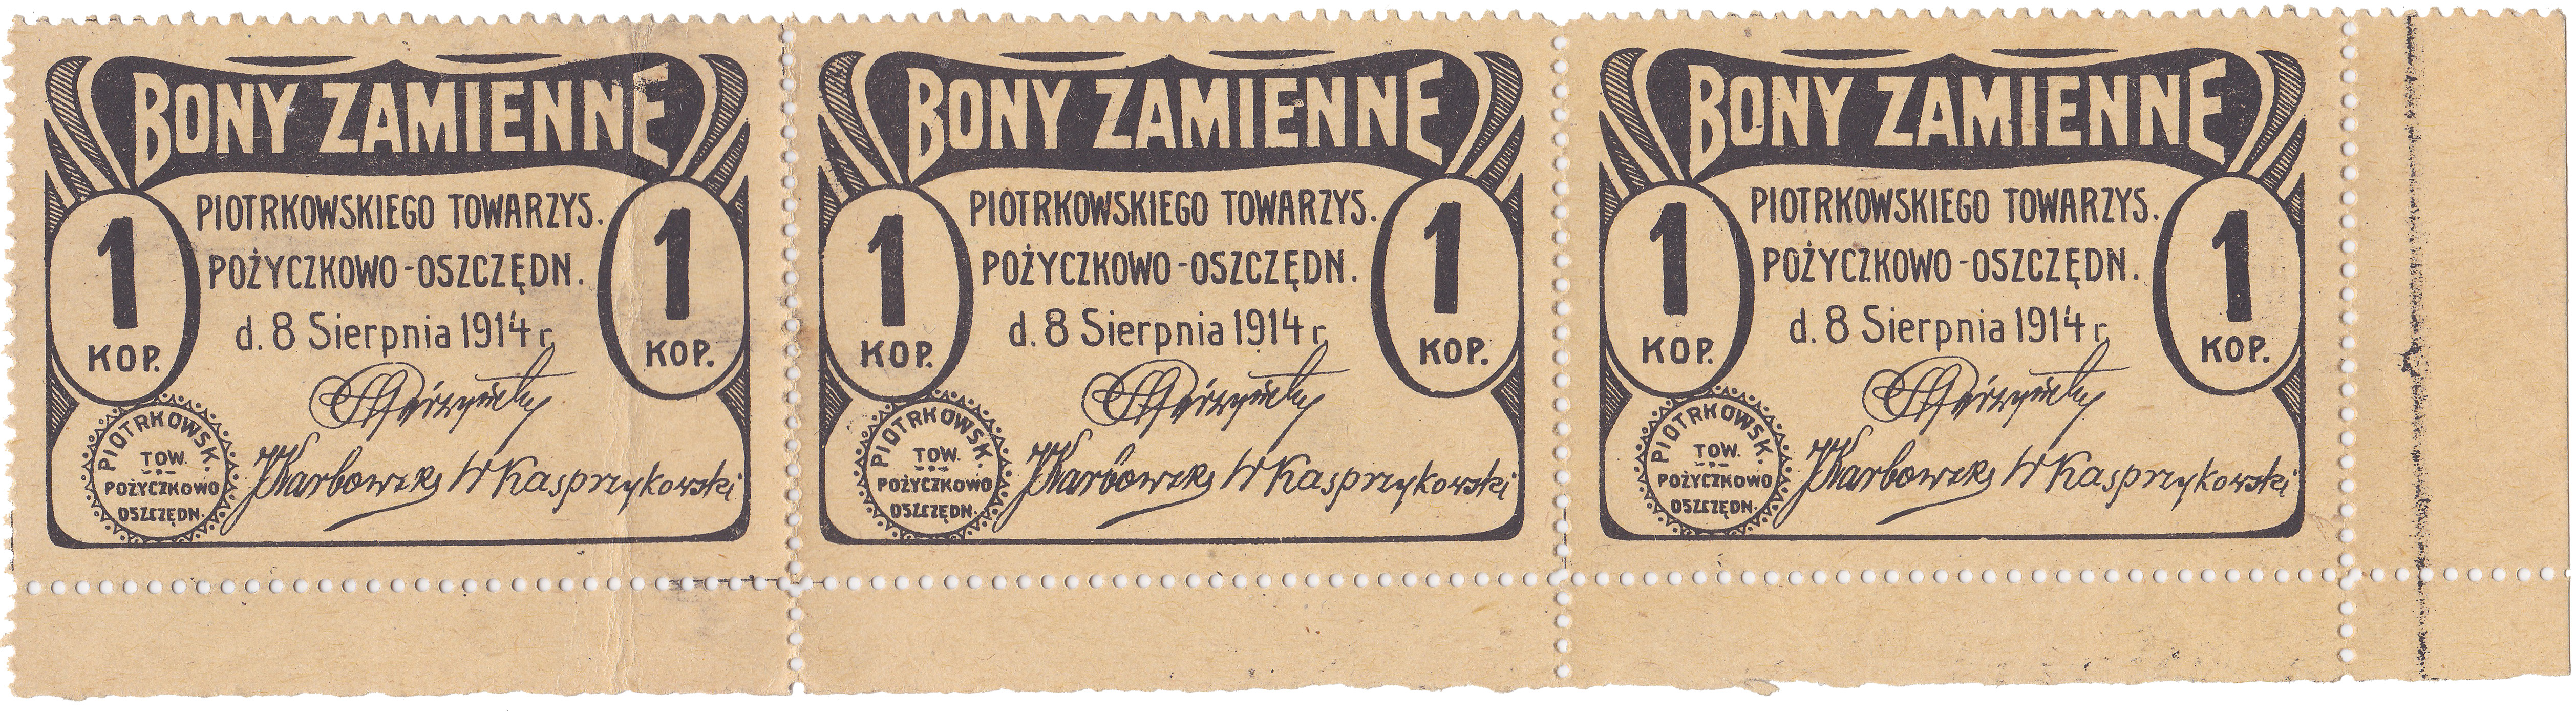 Конвертируемый ваучер 1 Копейка 1914 год. Пётркувское Ccудо-Сберегательное Товарищество. Польша